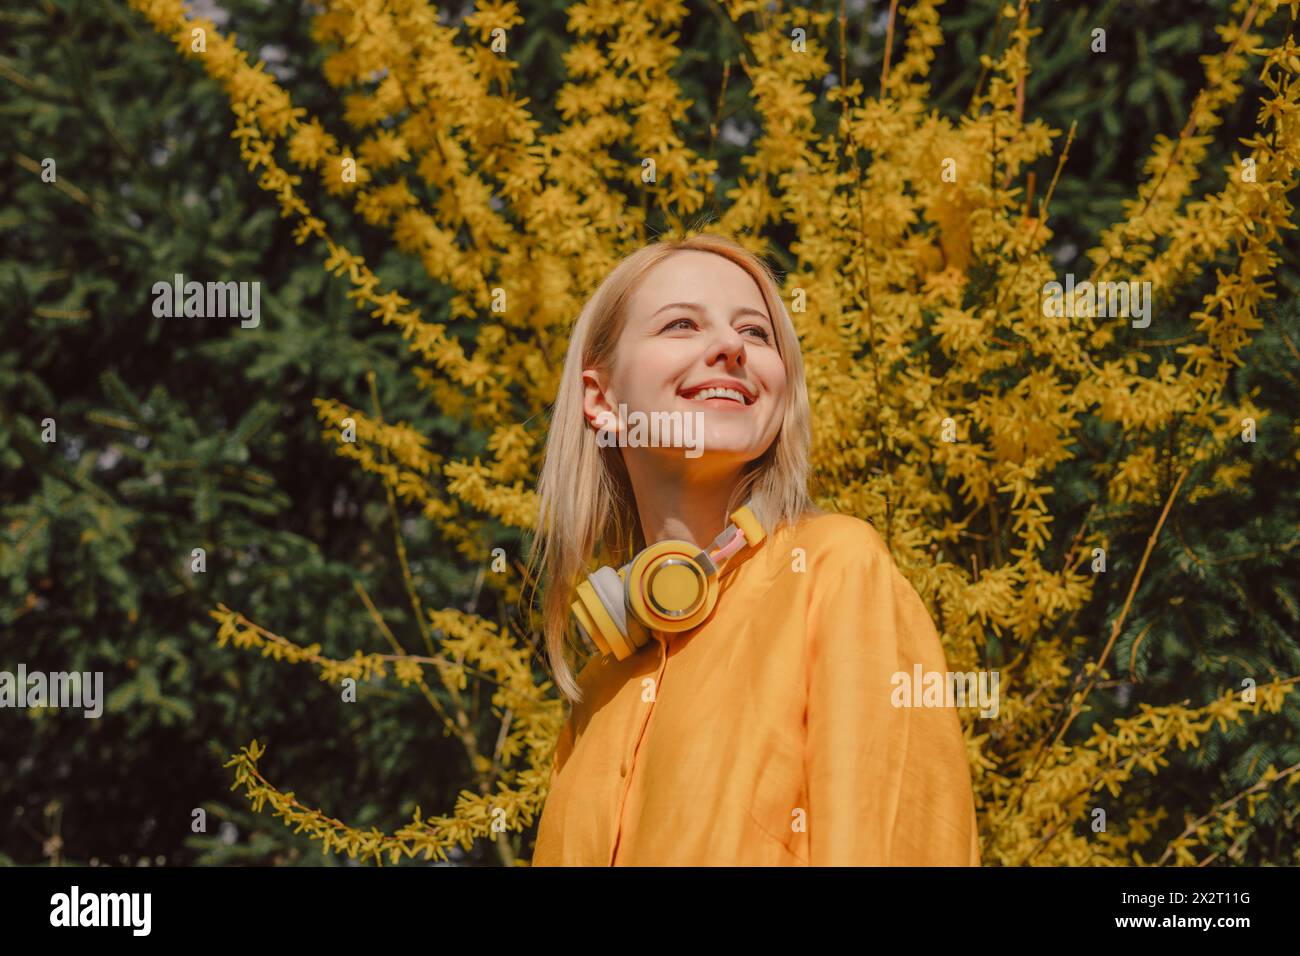 Lächelnde Frau mit kabellosen Kopfhörern, die neben dem gelben Blütenbaum steht Stockfoto